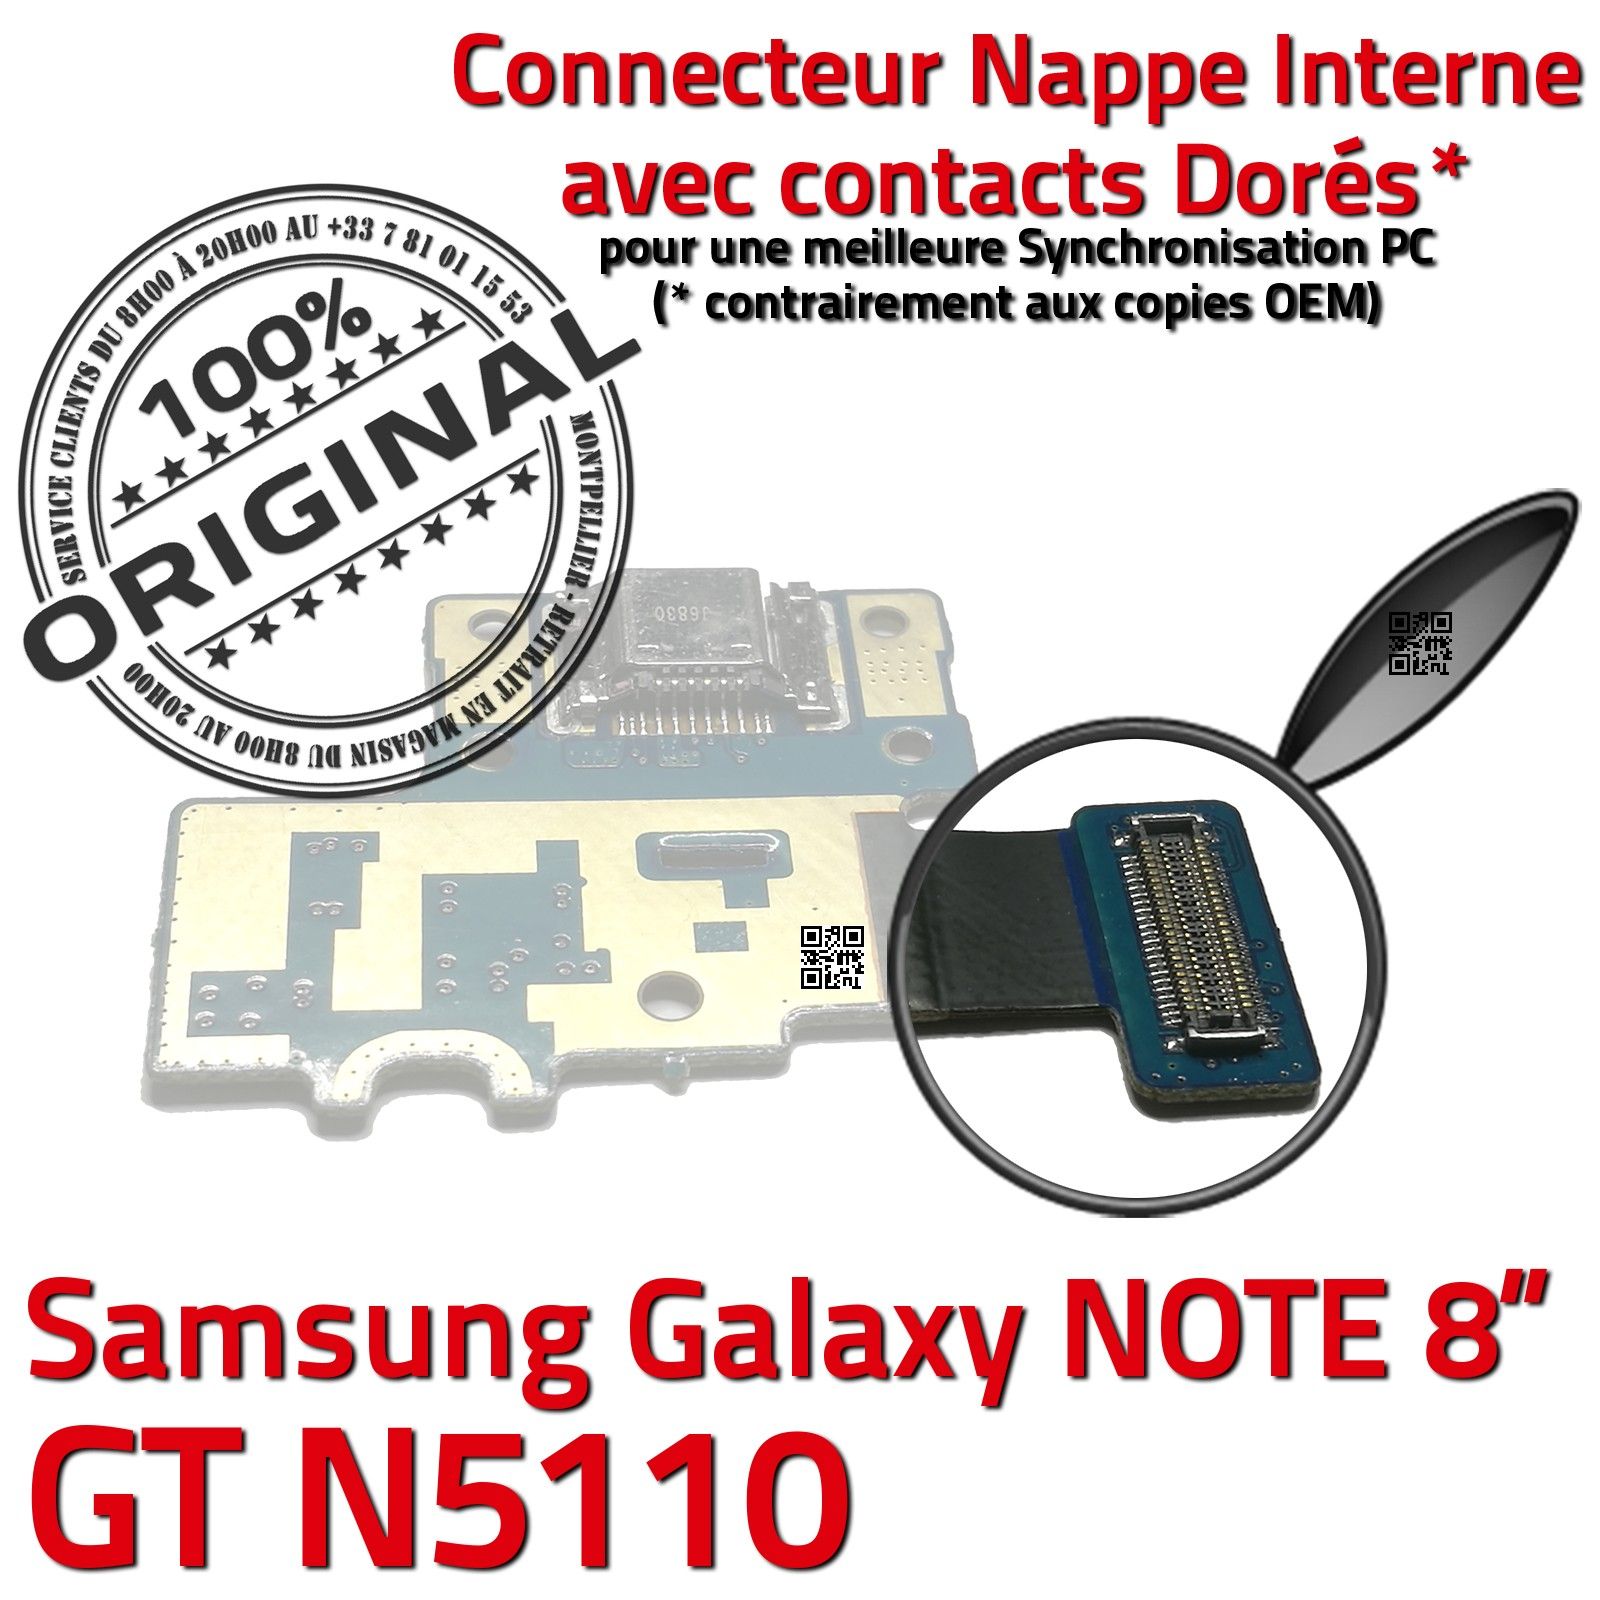 NOTE GT N5110 ORIGINAL Samsung Galaxy Connecteur de Charge Chargeur MicroUSB Nappe OFFICIELLE Qualité Contact Doré Réparation